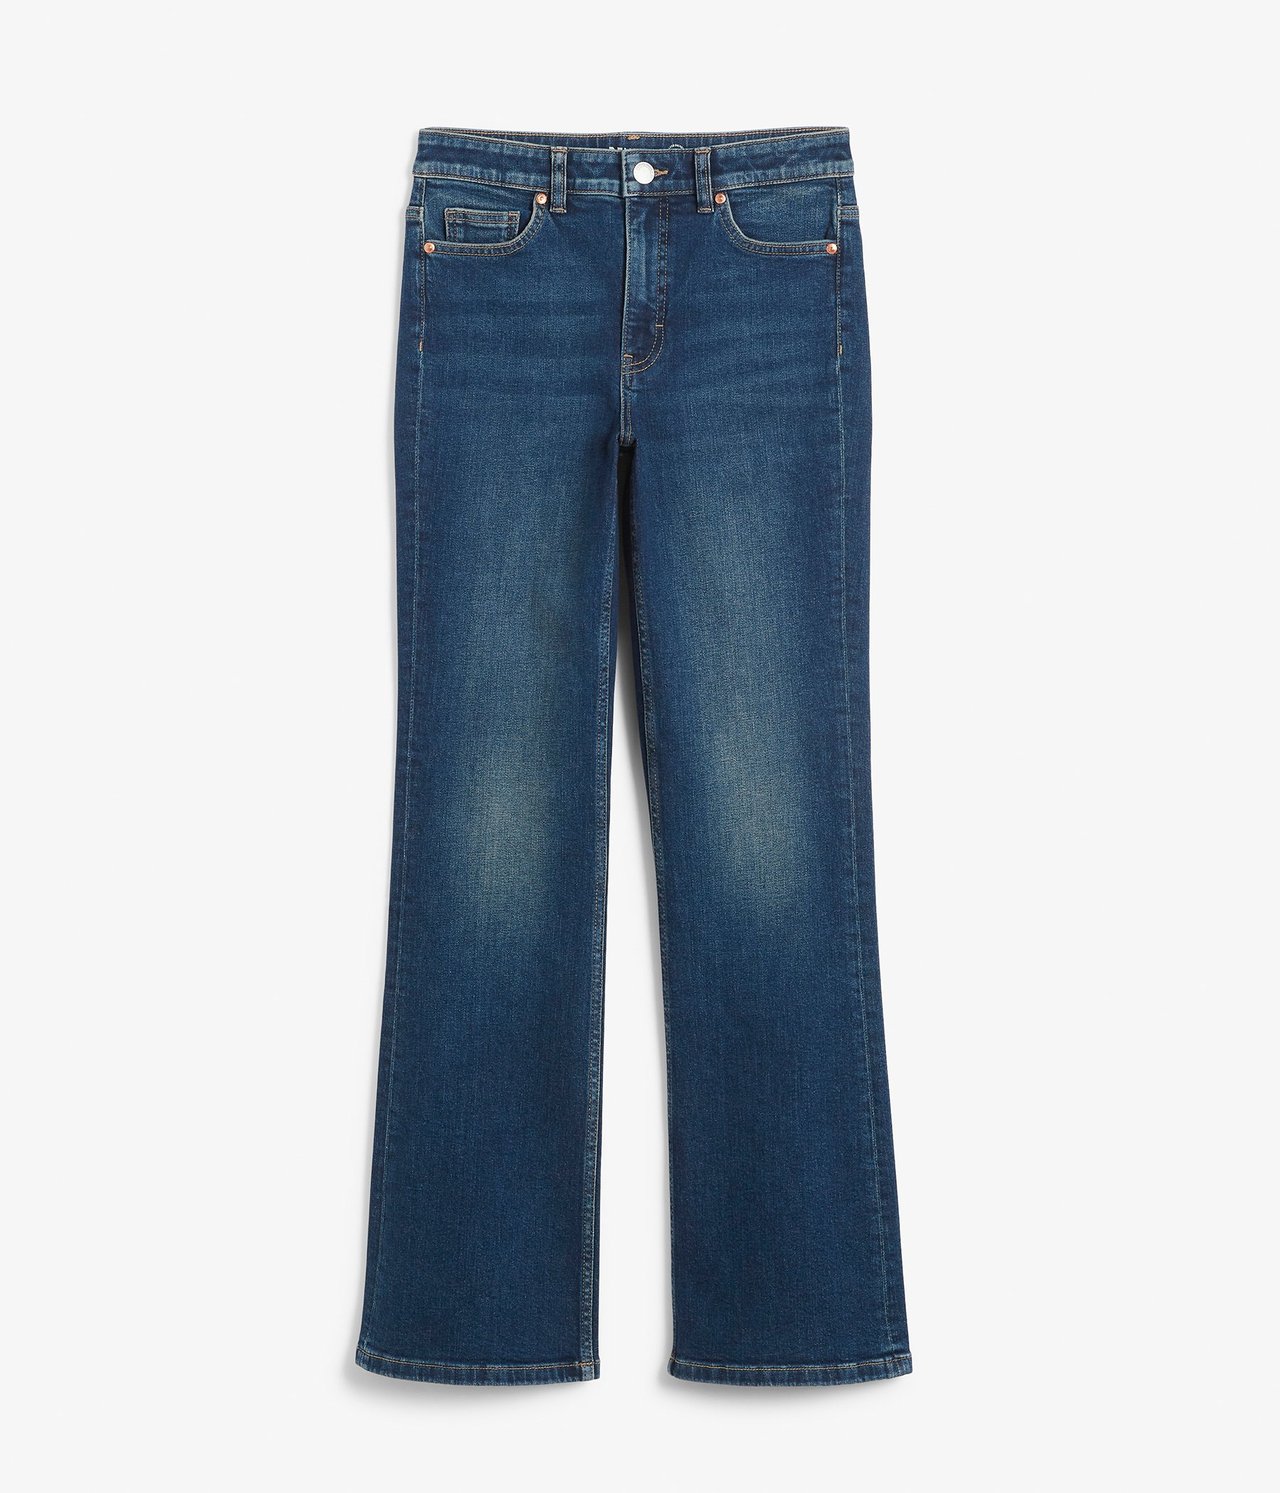 Flare jeans regular waist